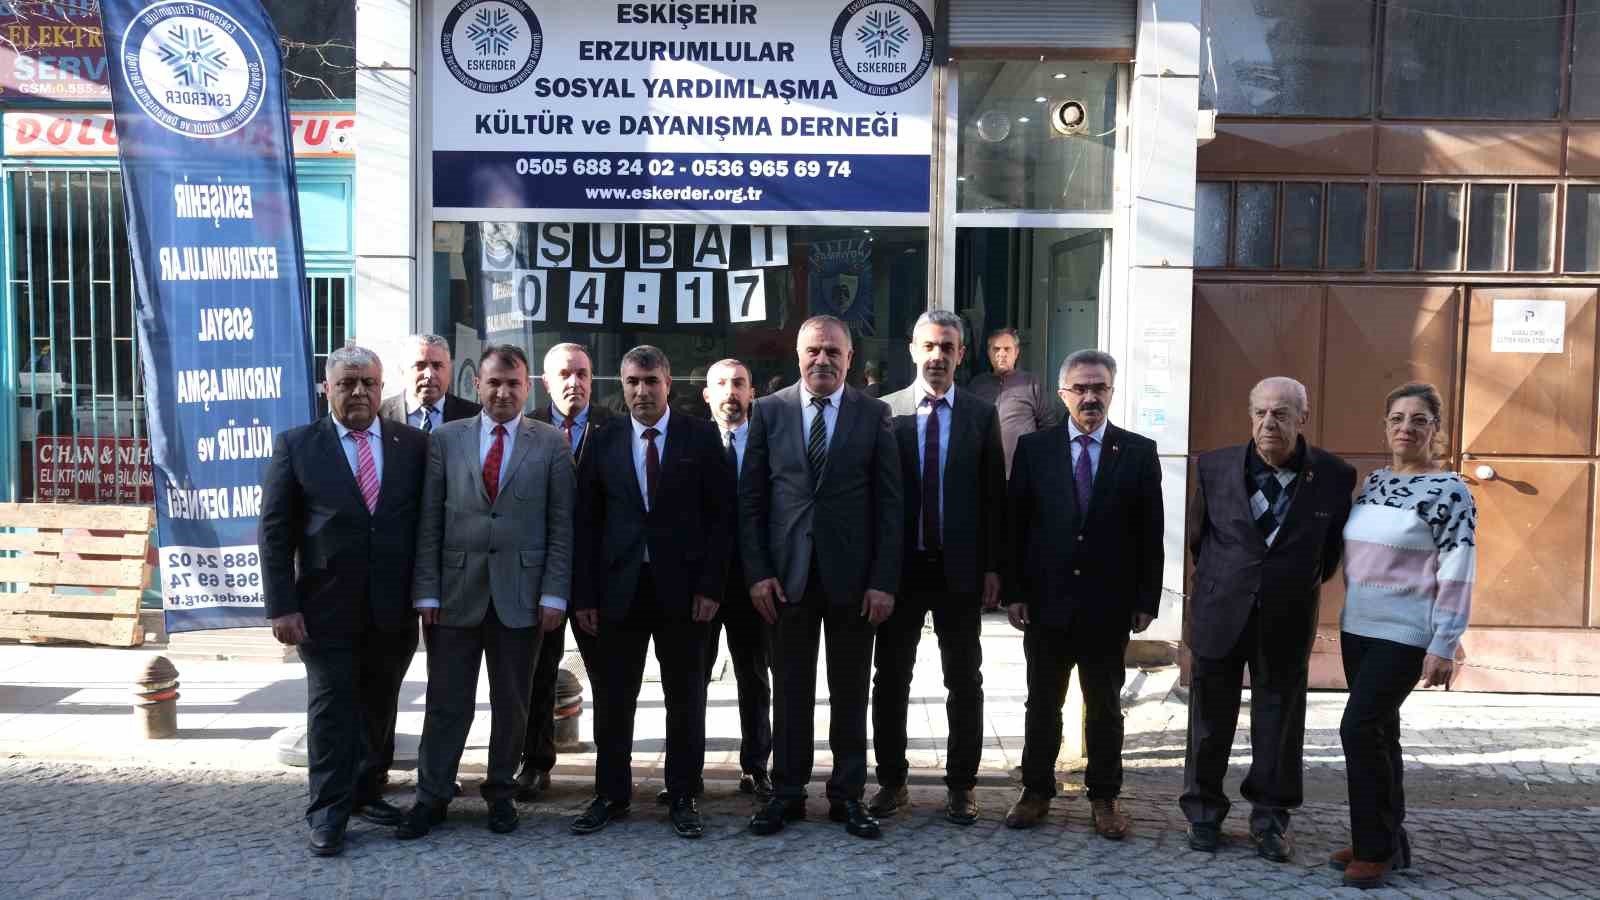 Eskişehir Erzurumlular Sosyal Yardımlaşma Kültür ve Dayanışma Derneği üyeleri bir araya geldi